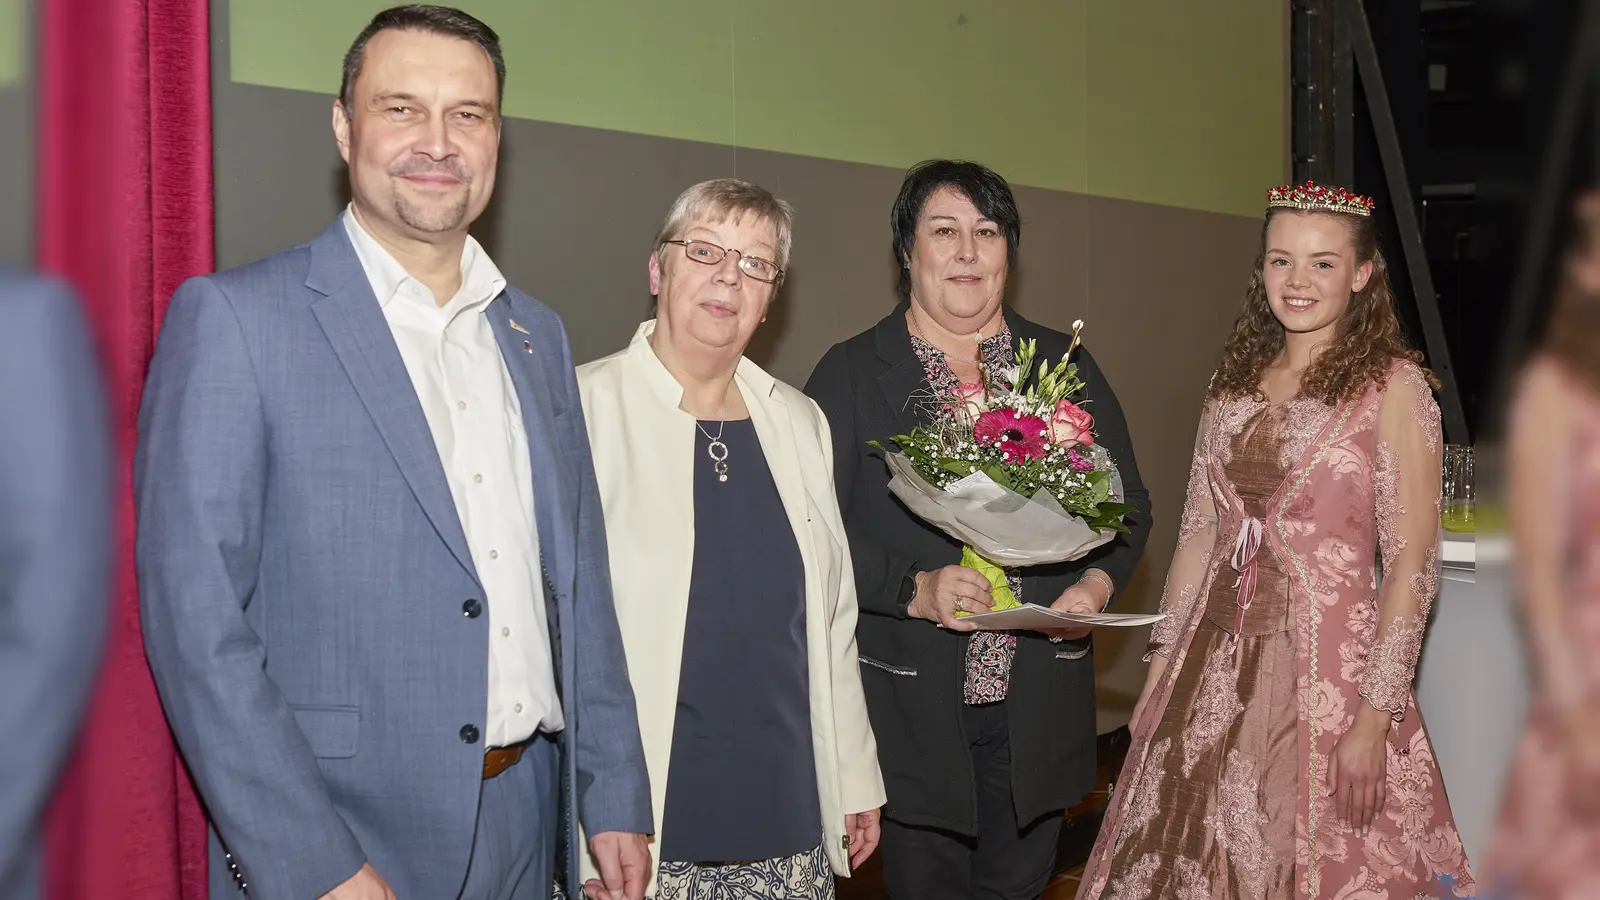 Der Bürgerpreis der Stadt Hofgeismar wurde in diesem Jahr an Maryvonne Jacq (2.v.r.) verliehen. (Foto: Stefan Bönning)